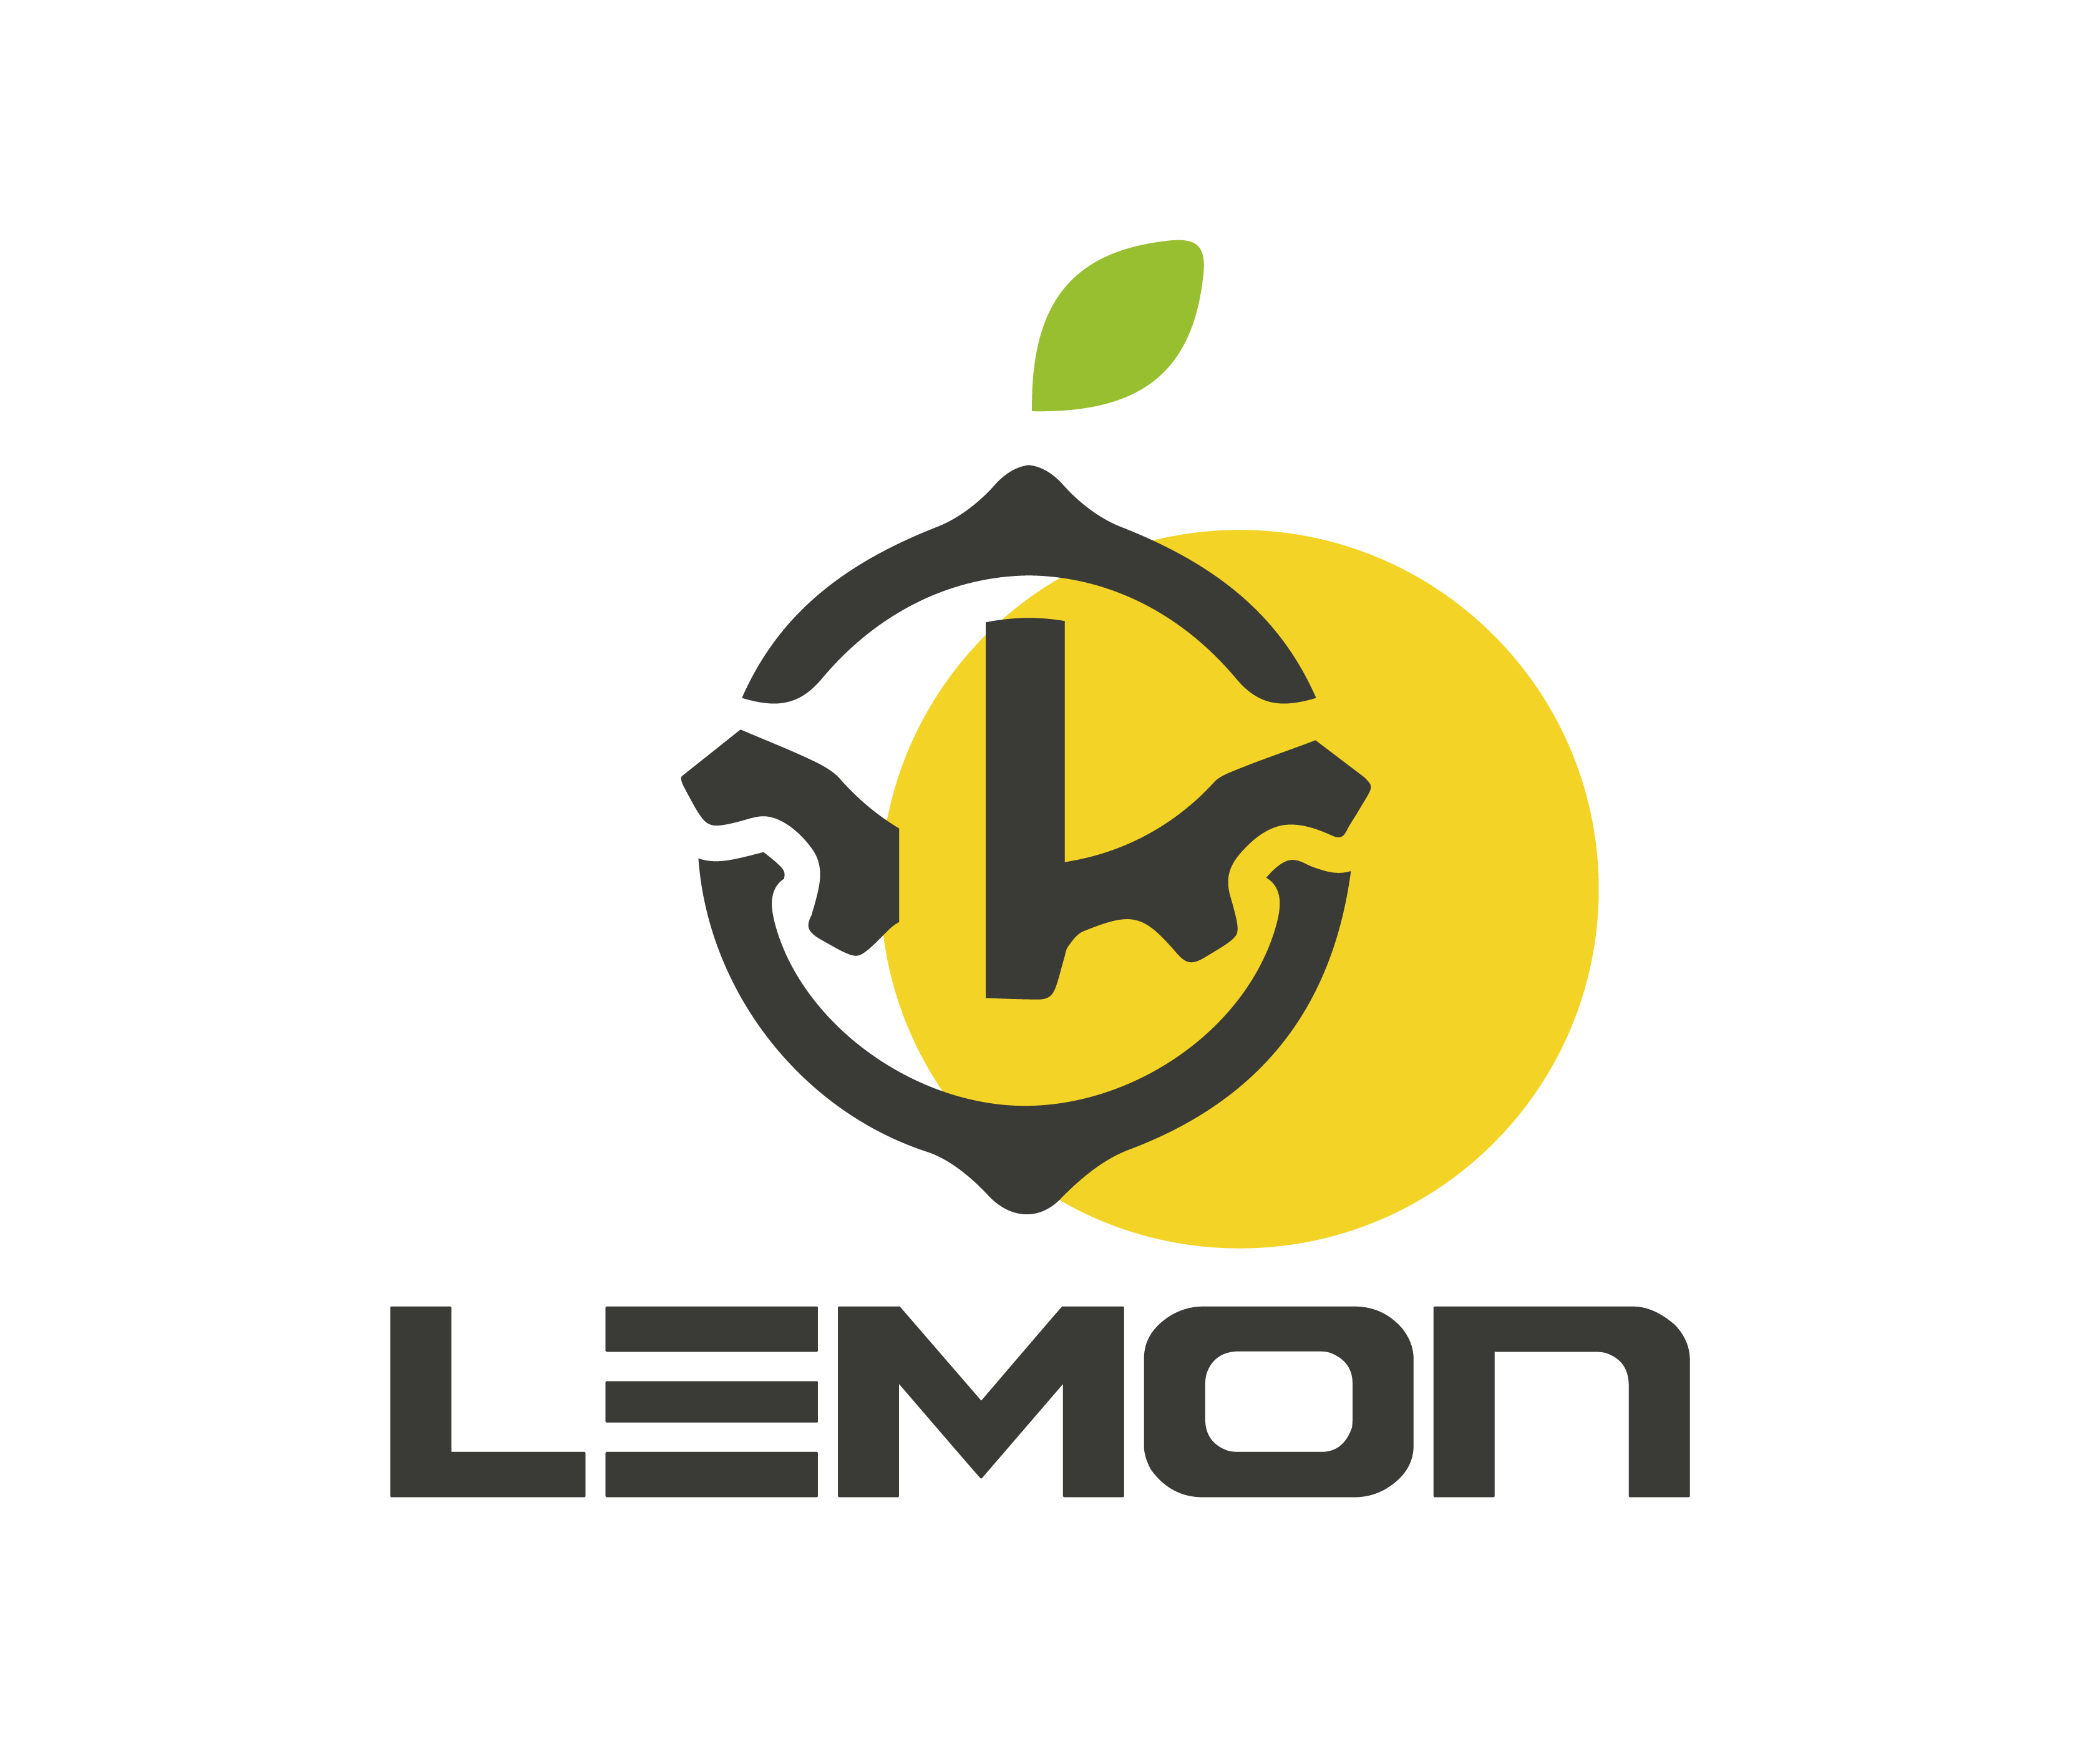 Lemonmach